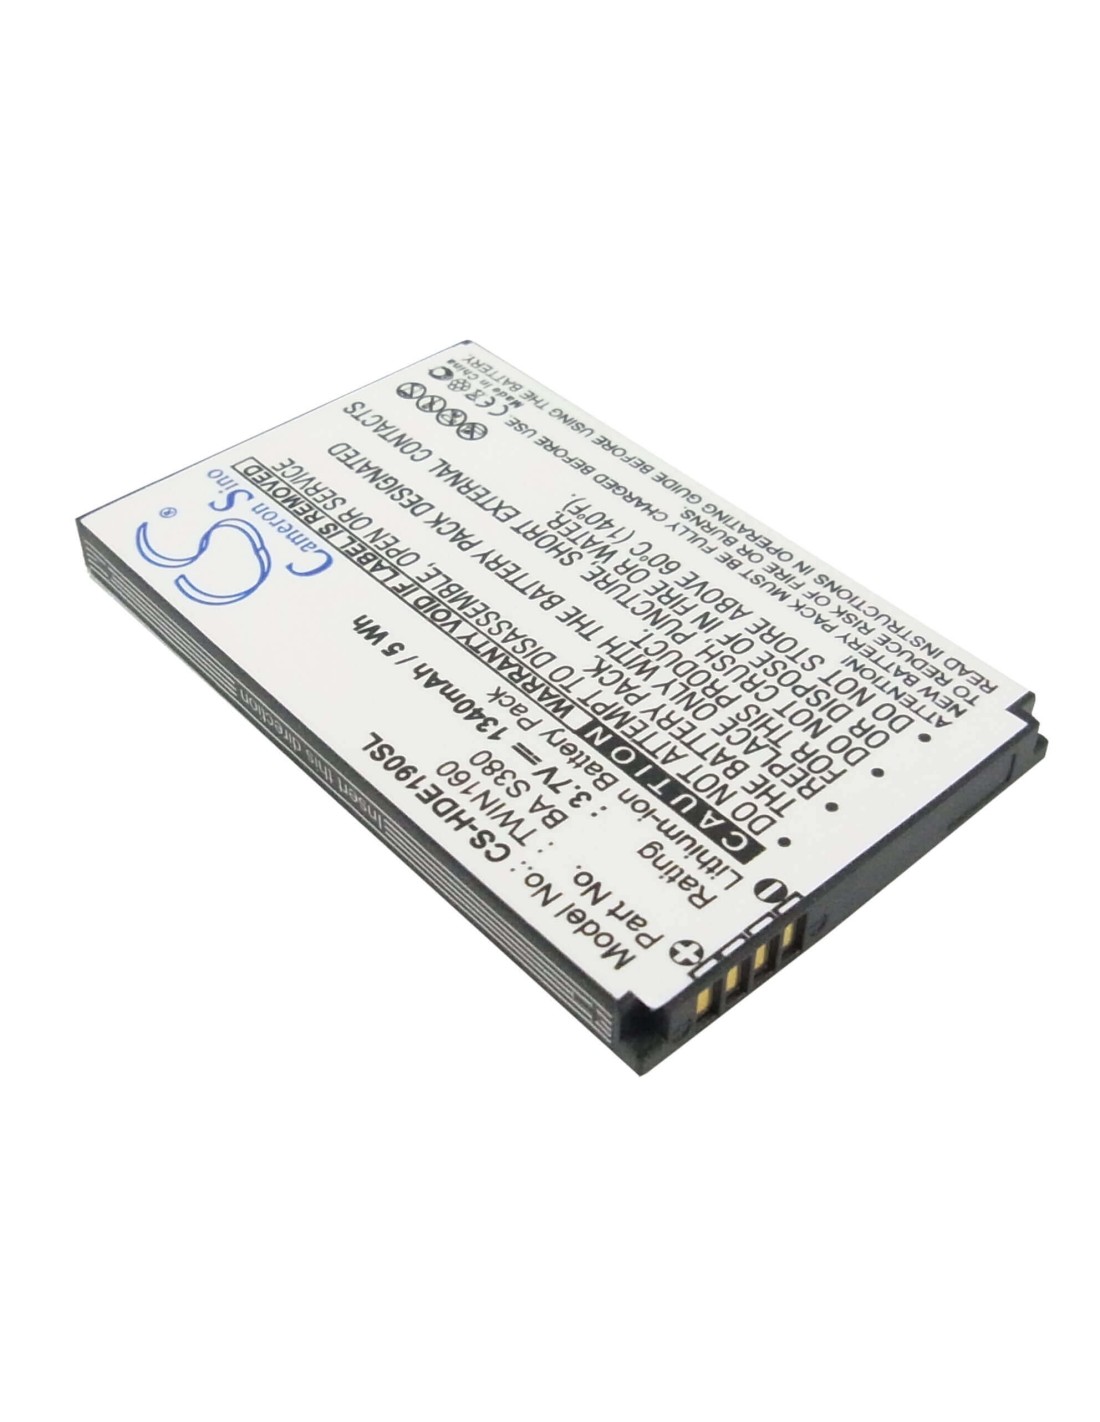 Battery for Google G3 3.7V, 1340mAh - 4.96Wh